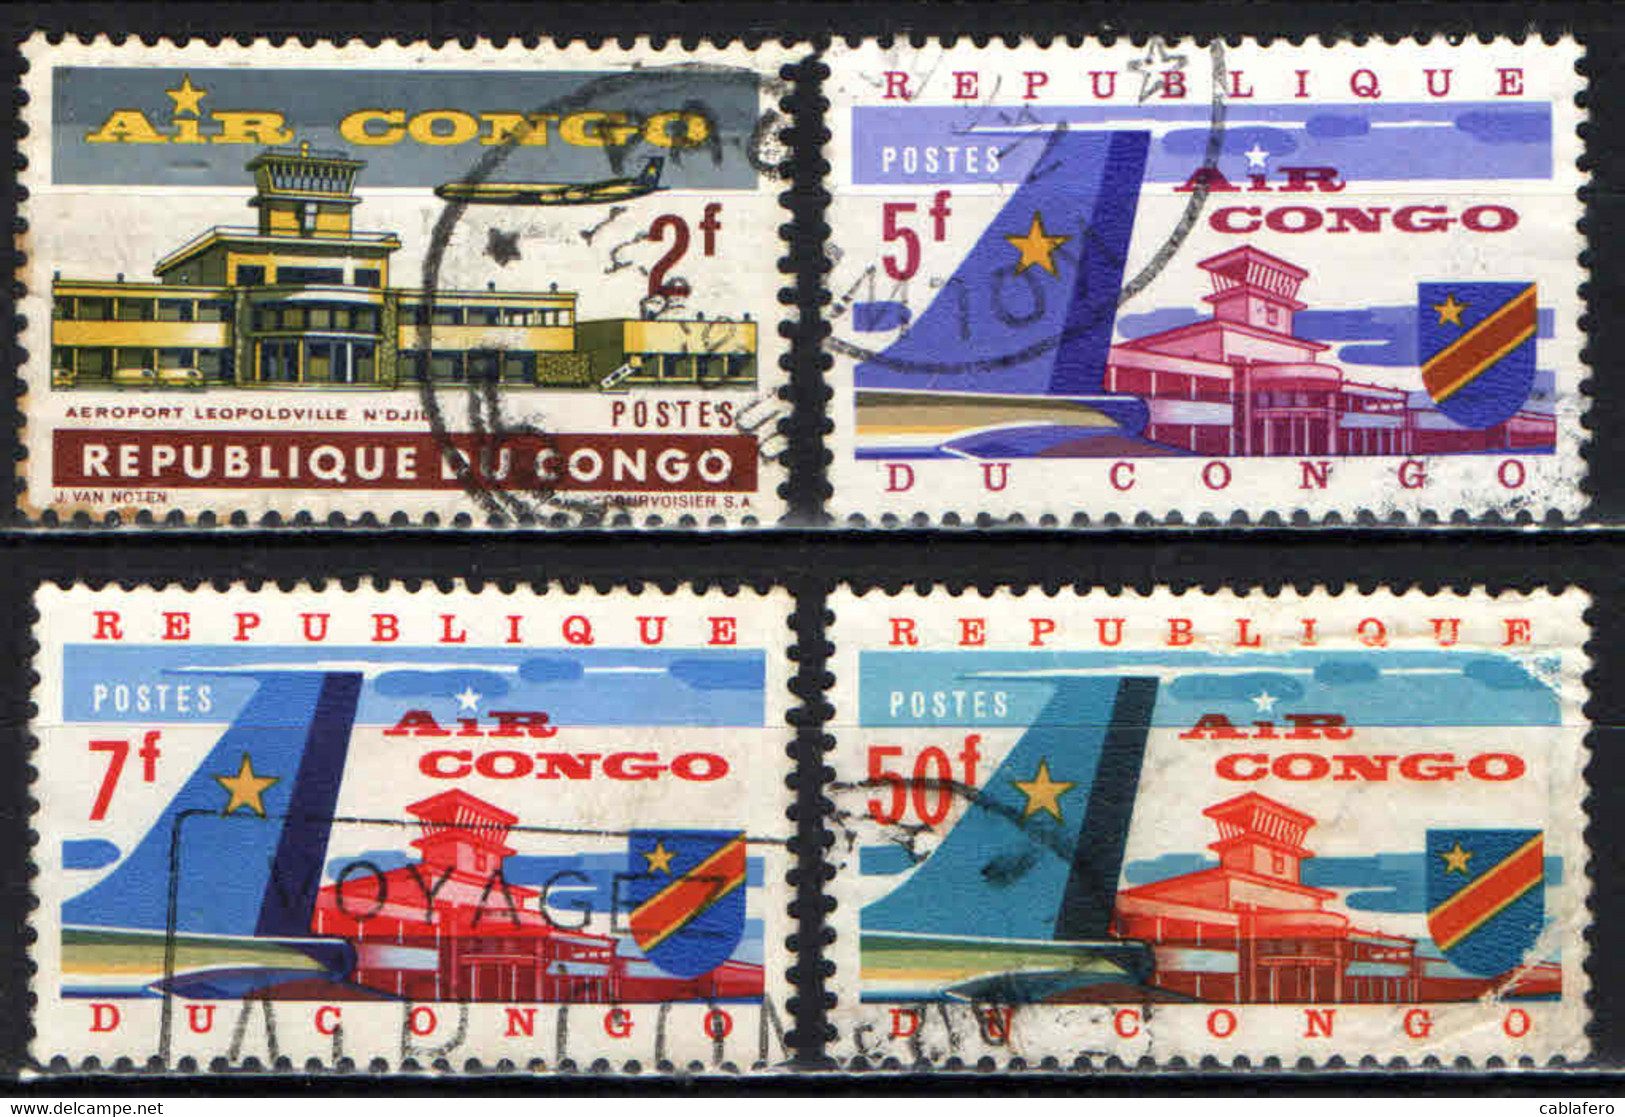 CONGO - 1963 - LINEA AEREA "AIR CONGO" - USATI - Used Stamps